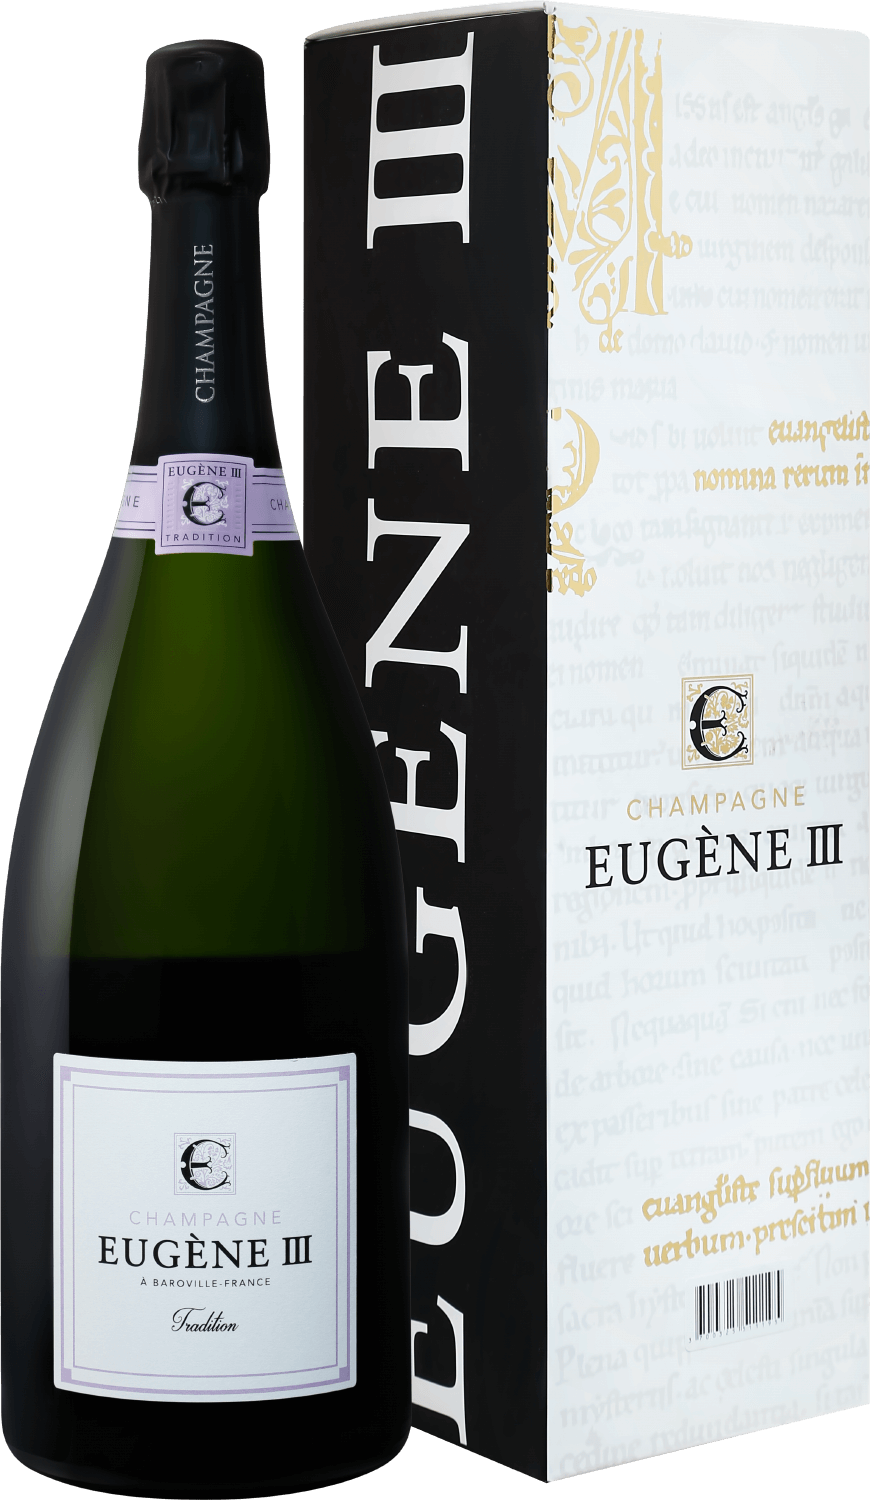 Eugene III Tradition Brut Champagne АOC Coopérative Vinicole de la Région de Baroville (gift box) eugene iii rosé brut champagne аoc coopérative vinicole de la région de baroville